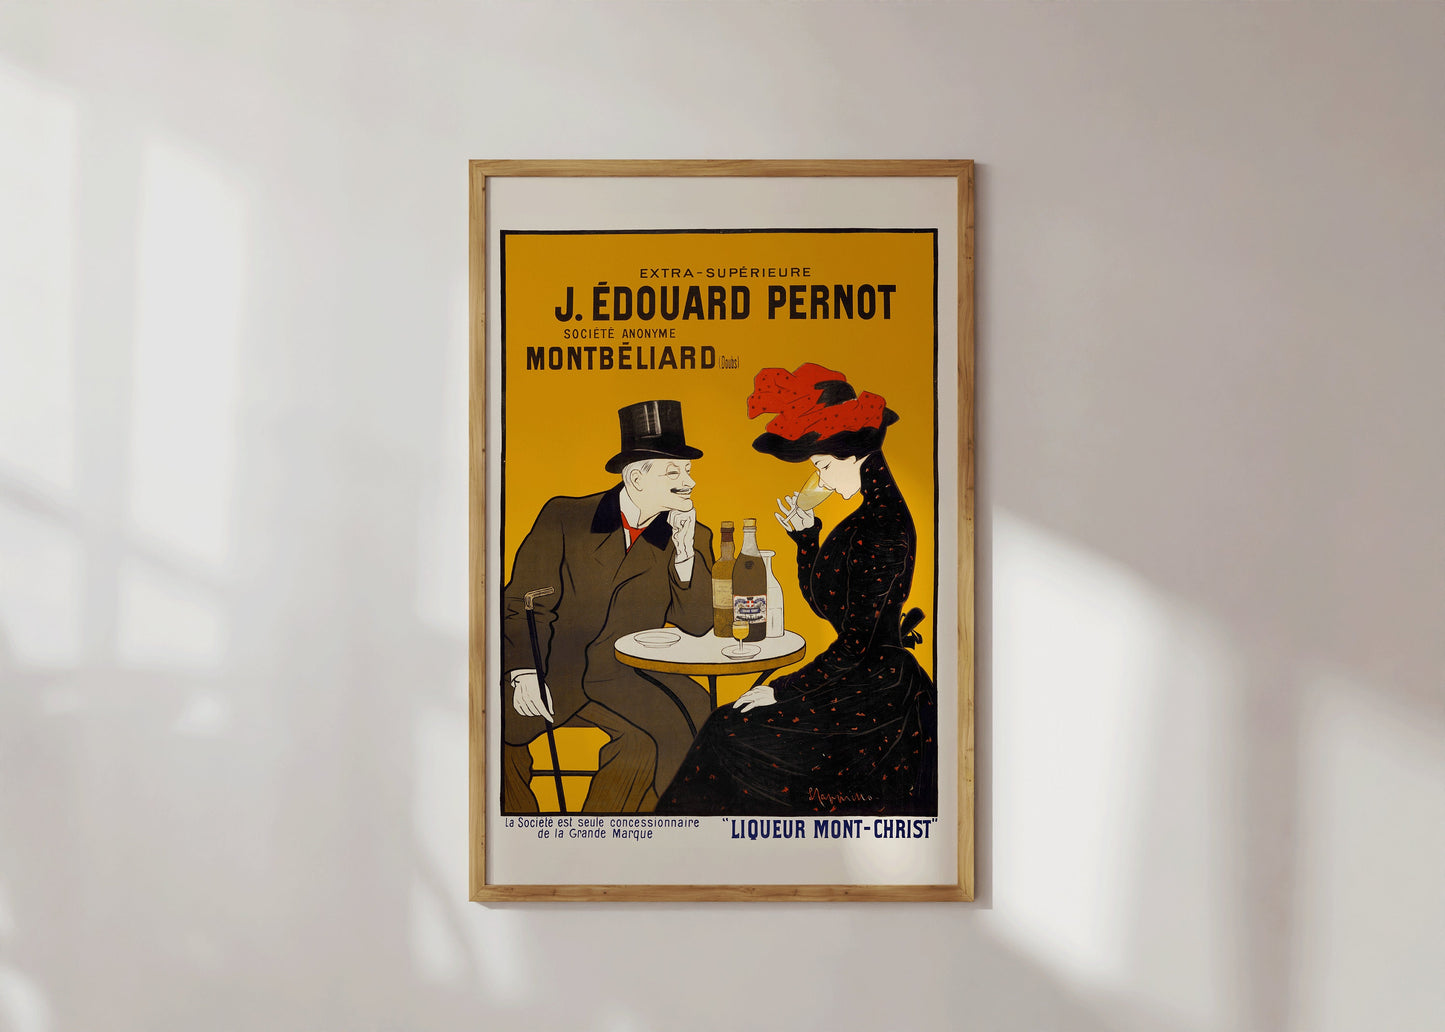 Liquor Monte Cristo Leonetto Cappiello Poster Vintage Art Nouveau Poster Print Advertisement Retro Decor Framed Ready to Hang Unique Gift